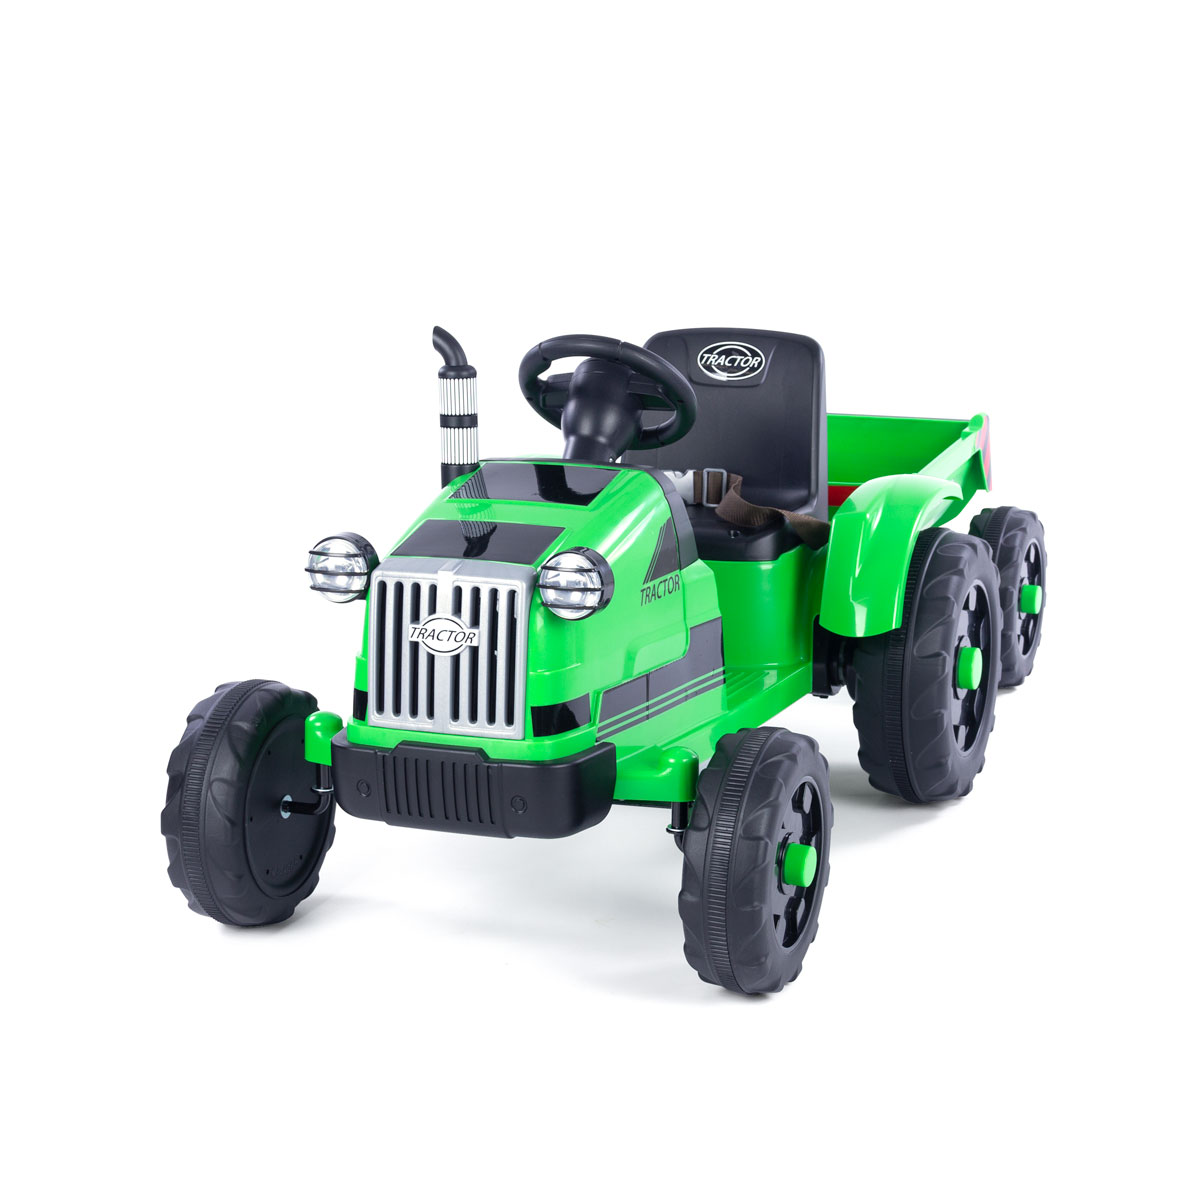 Tractor eléctrico para niños con remolque 2 motores de 90 vatios